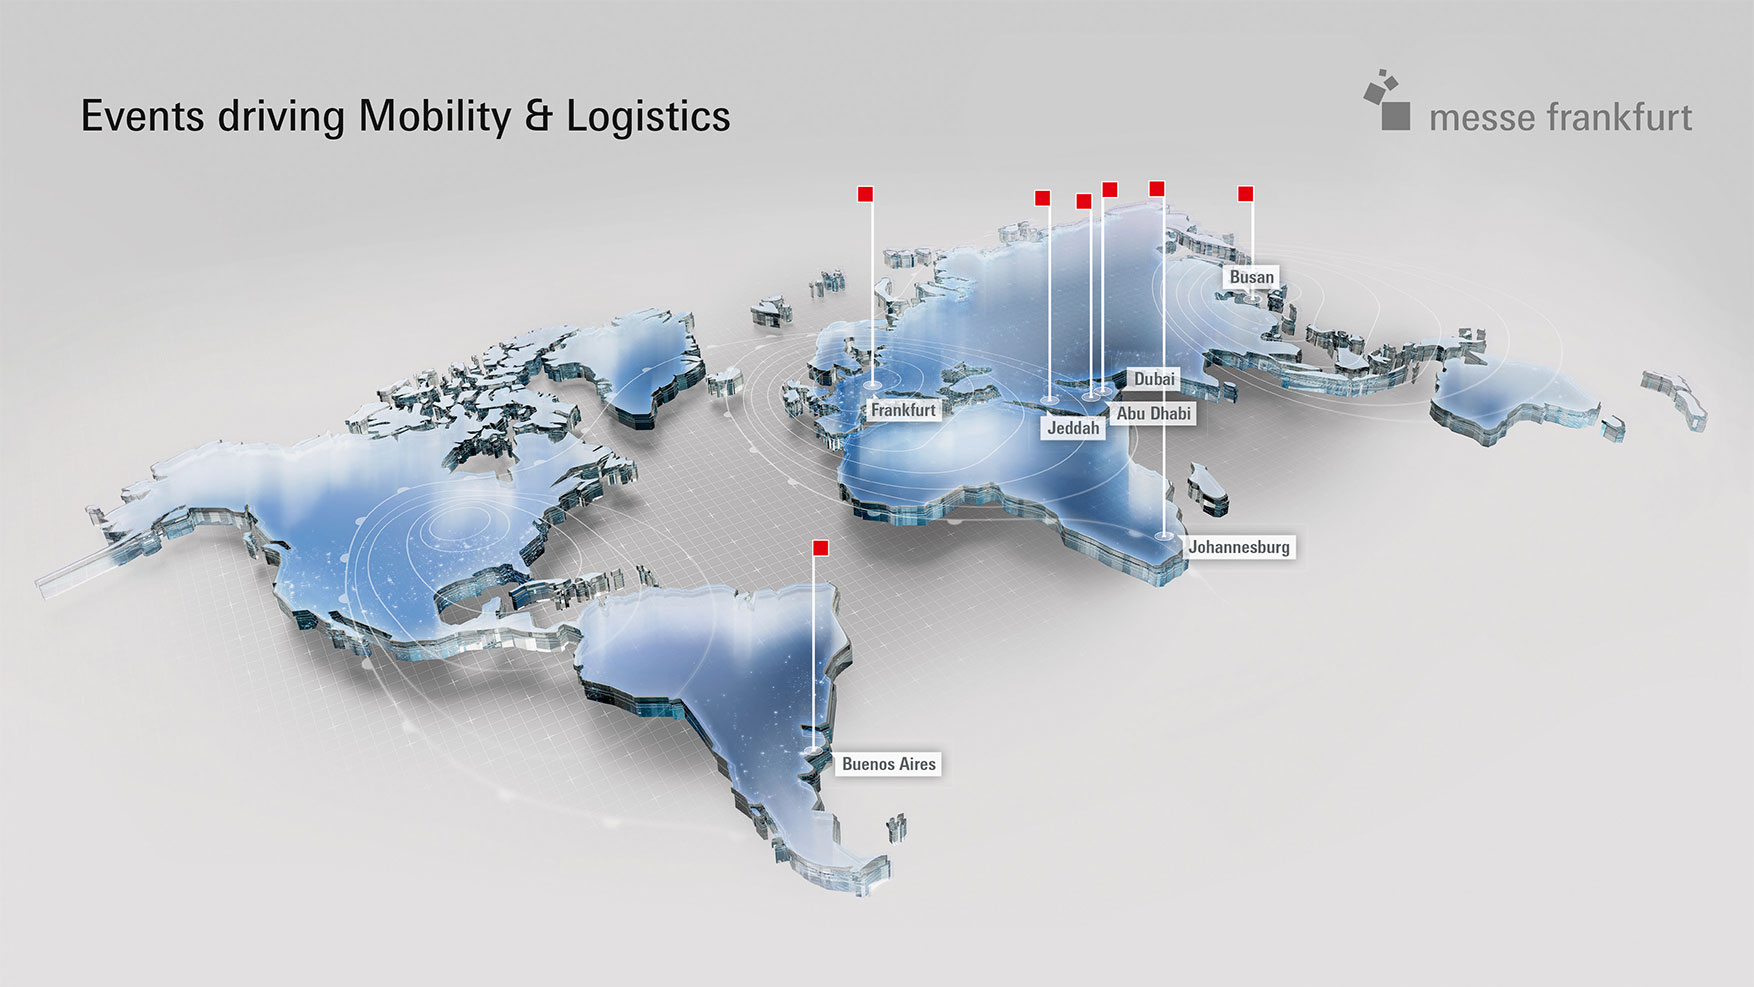 Weltkarte mit Transport & Logistics-Veranstaltungsorten